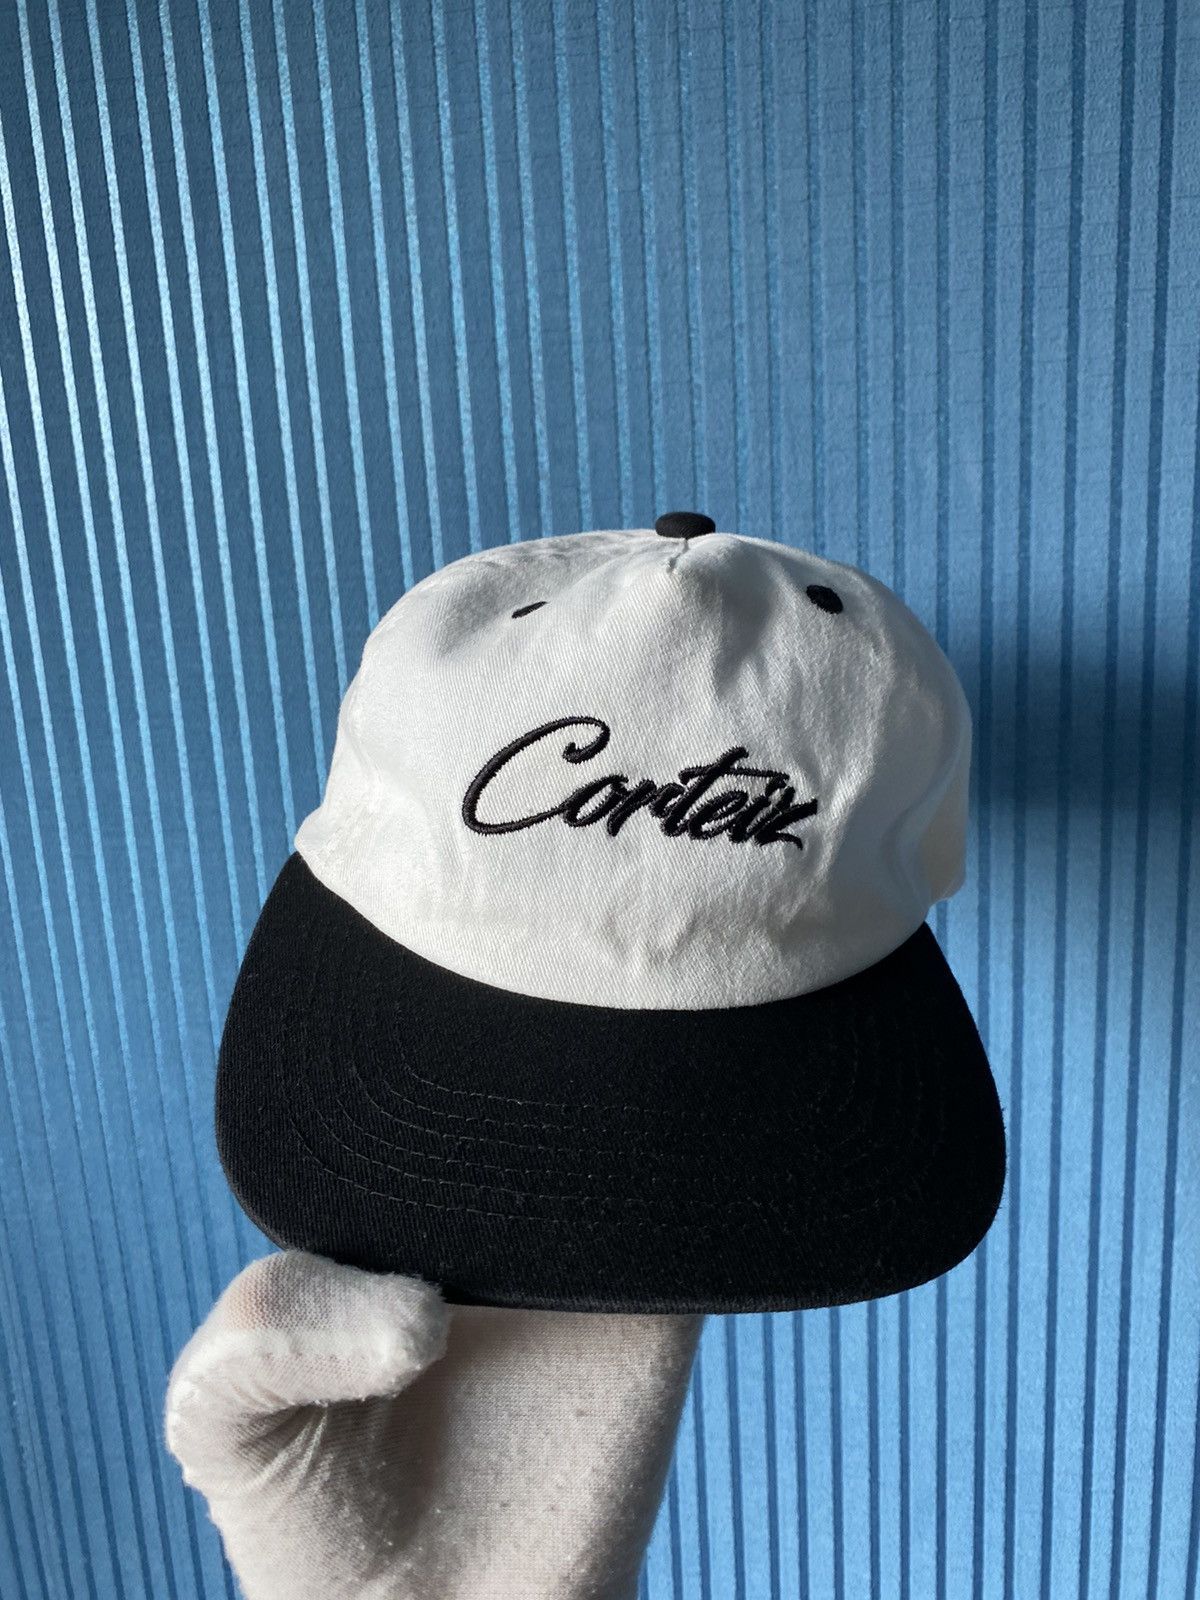 Corteiz Corteiz cap limited edition hat OG Drip Drill | Grailed